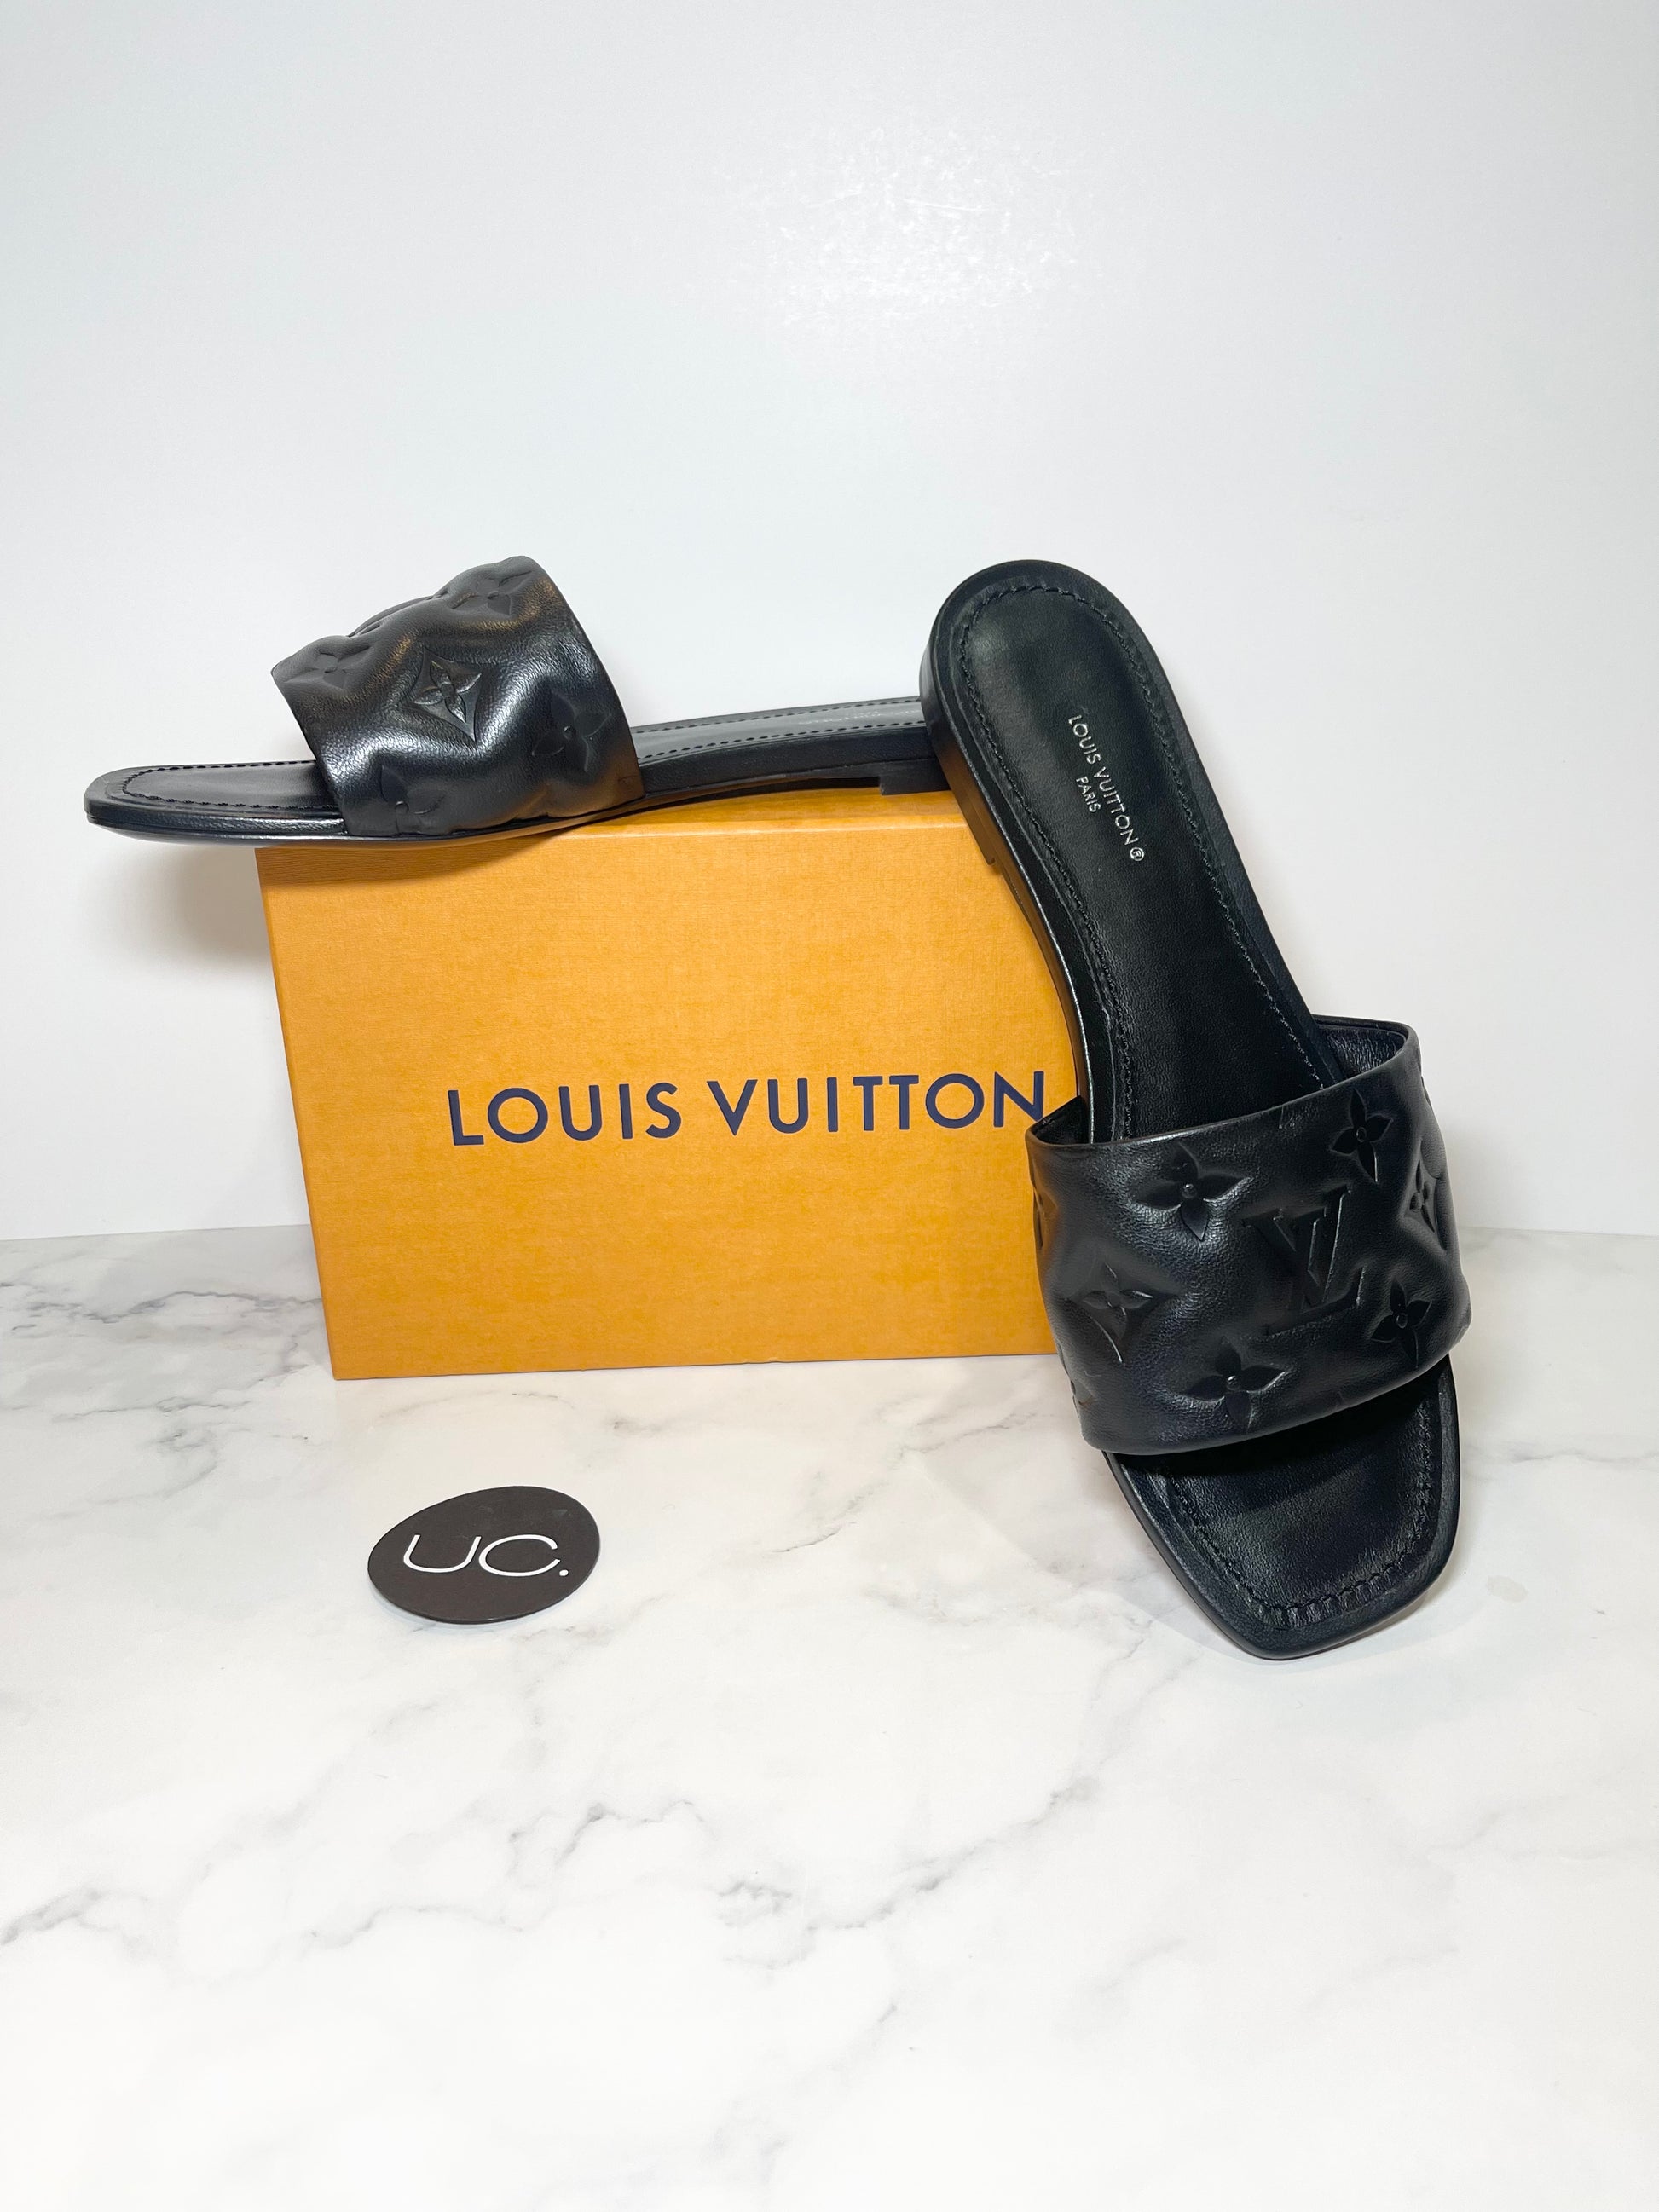 Louis Vuitton Revival Flat Mules - Vitkac shop online